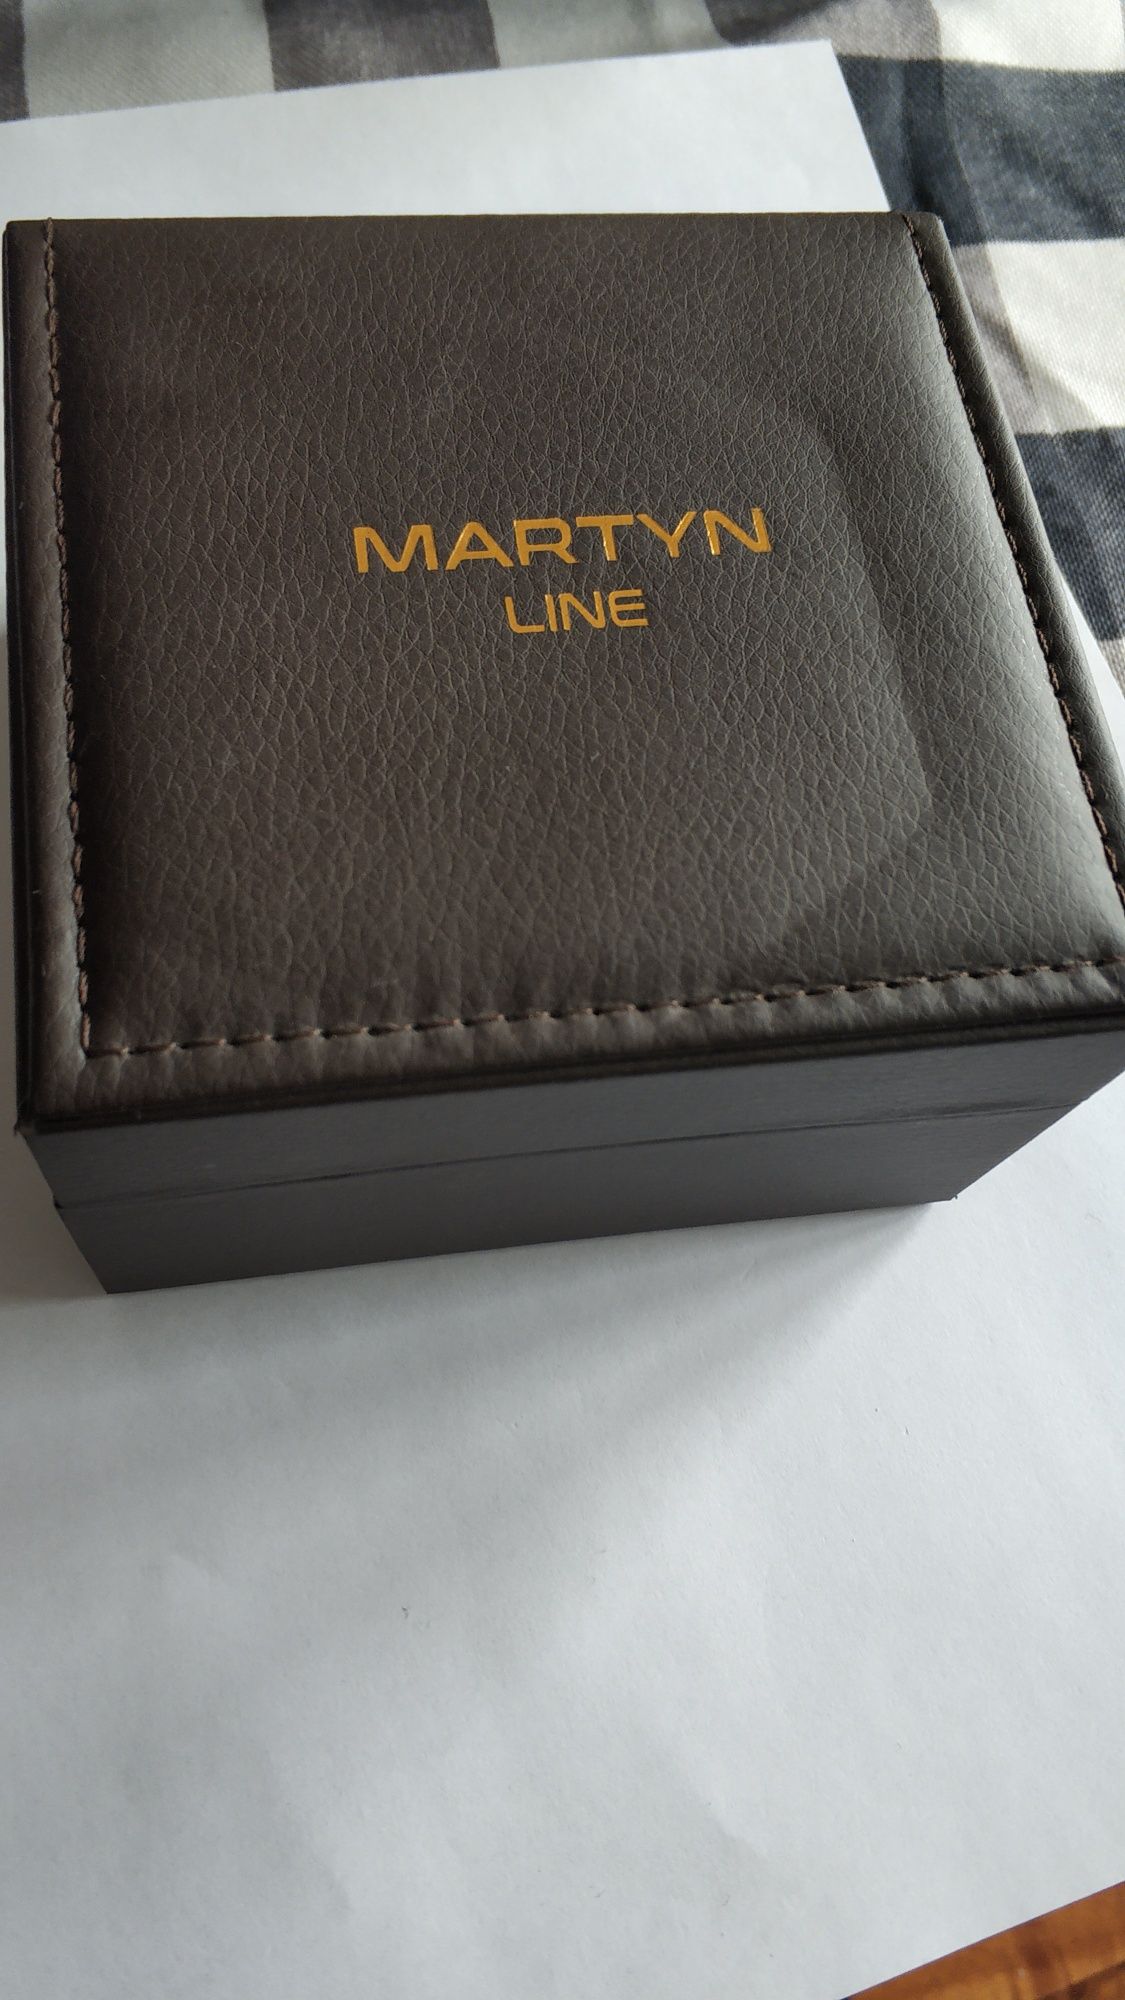 Martyn Line 3668, edycja limitowana, zegarek męski.